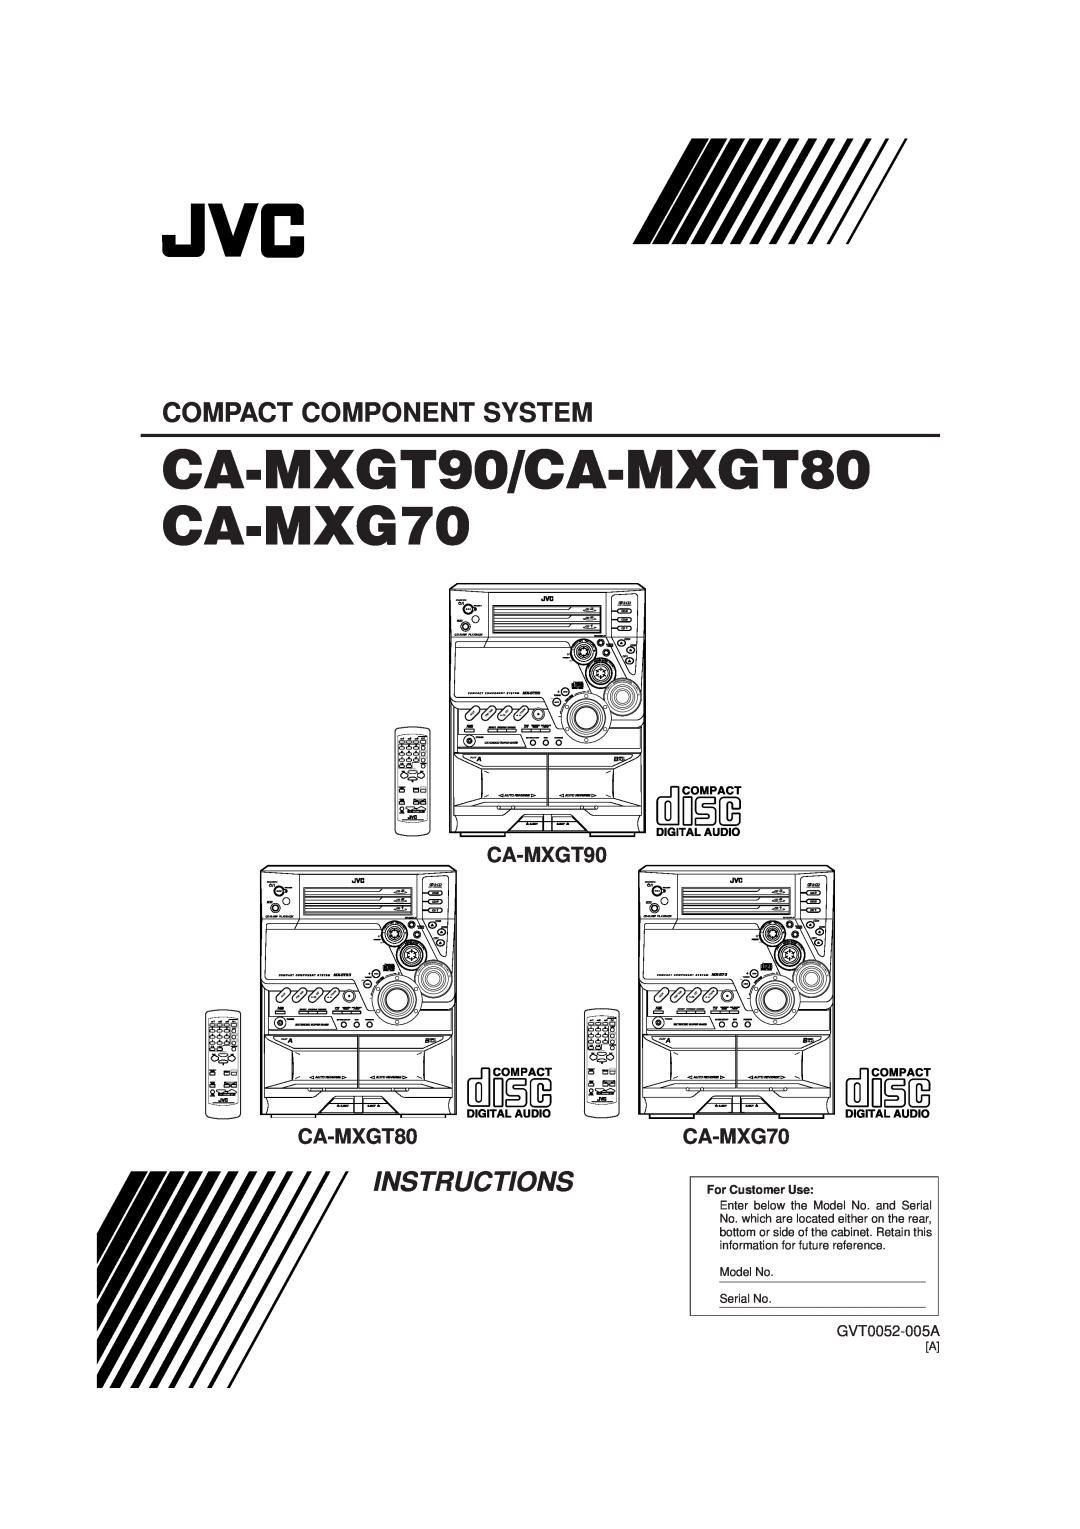 JVC CA-MXGT90, CA-MXGT80, CA-MXG70 manual GVT0052-005A, CA-MXGT90/CA-MXGT80 CA-MXG70, Compact Component System, MX-GT90 